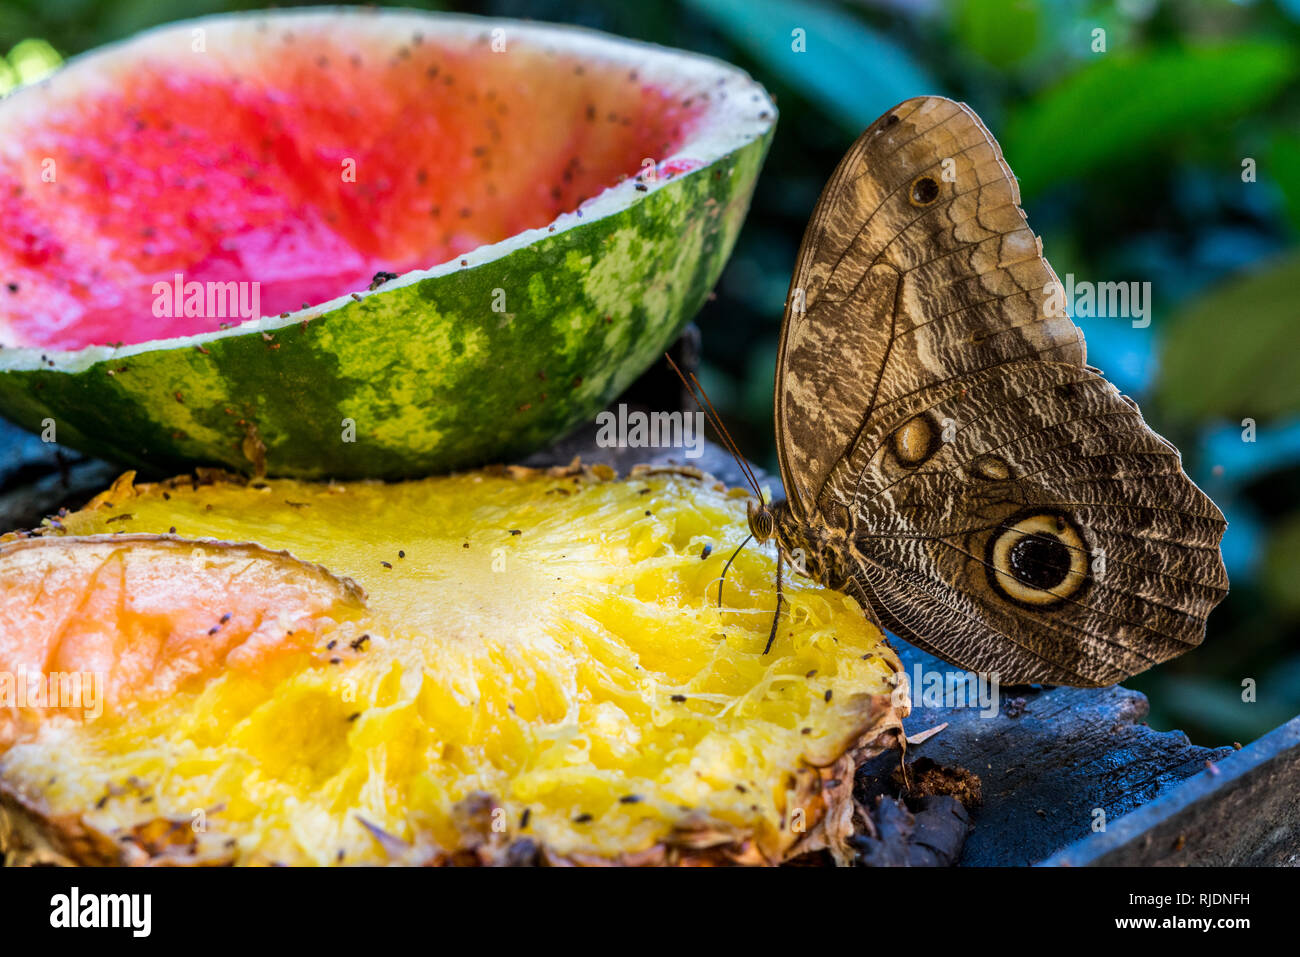 Ein schönes buntes Foto von einer schönen owl Butterfly (Caligo spp) Fütterung auf einige gärenden Ananas und Wassermelone Stockfoto